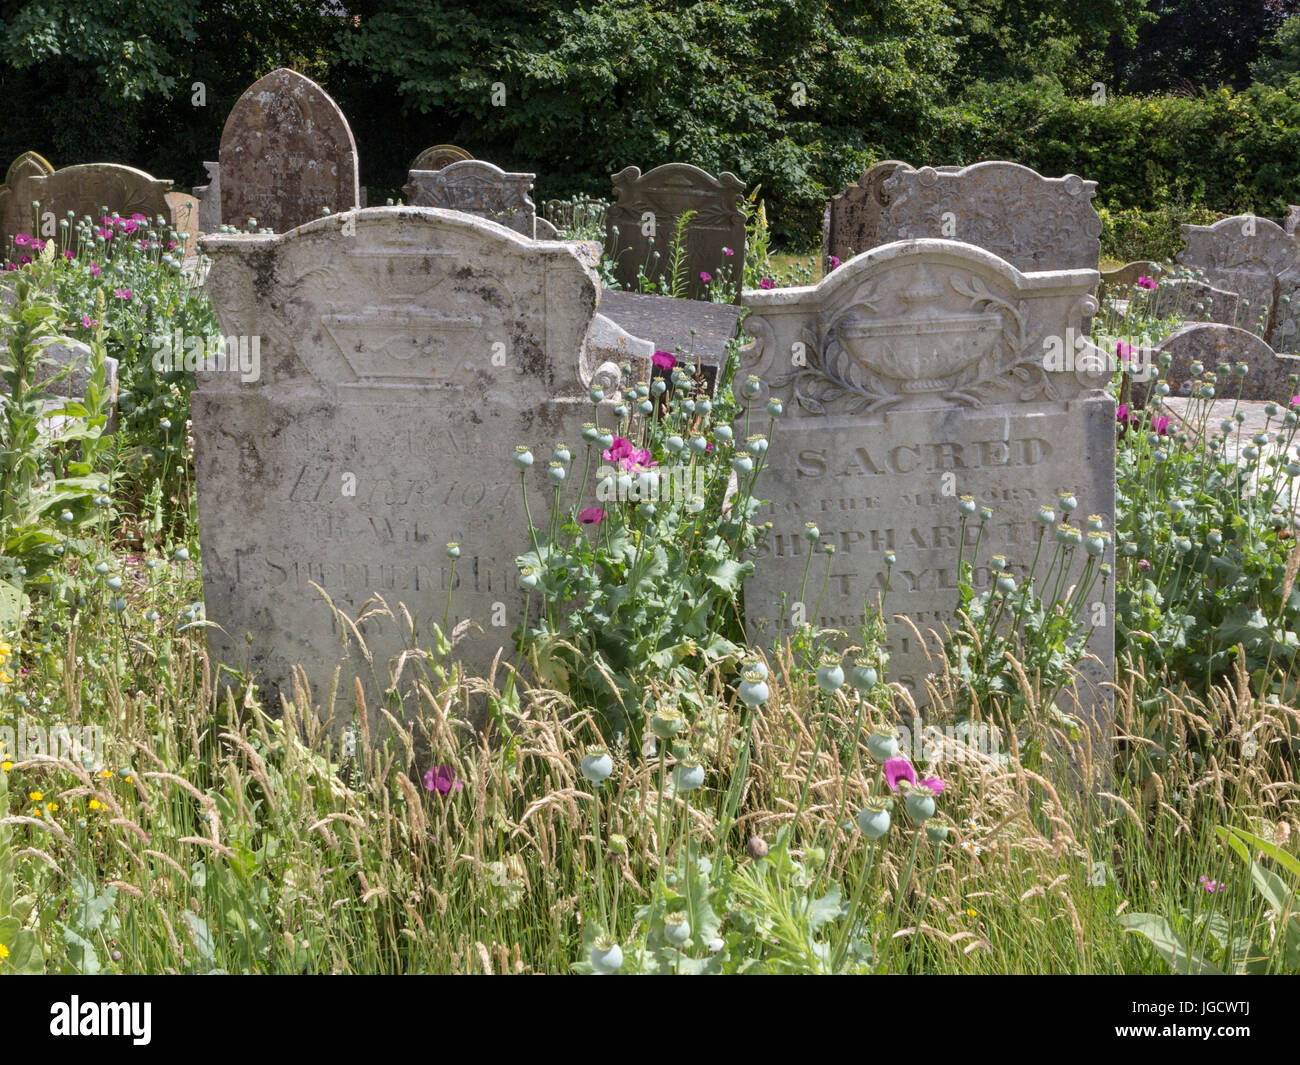 Lapidi in una sezione della fauna selvatica di un cimitero con fiori ed erbe Foto Stock